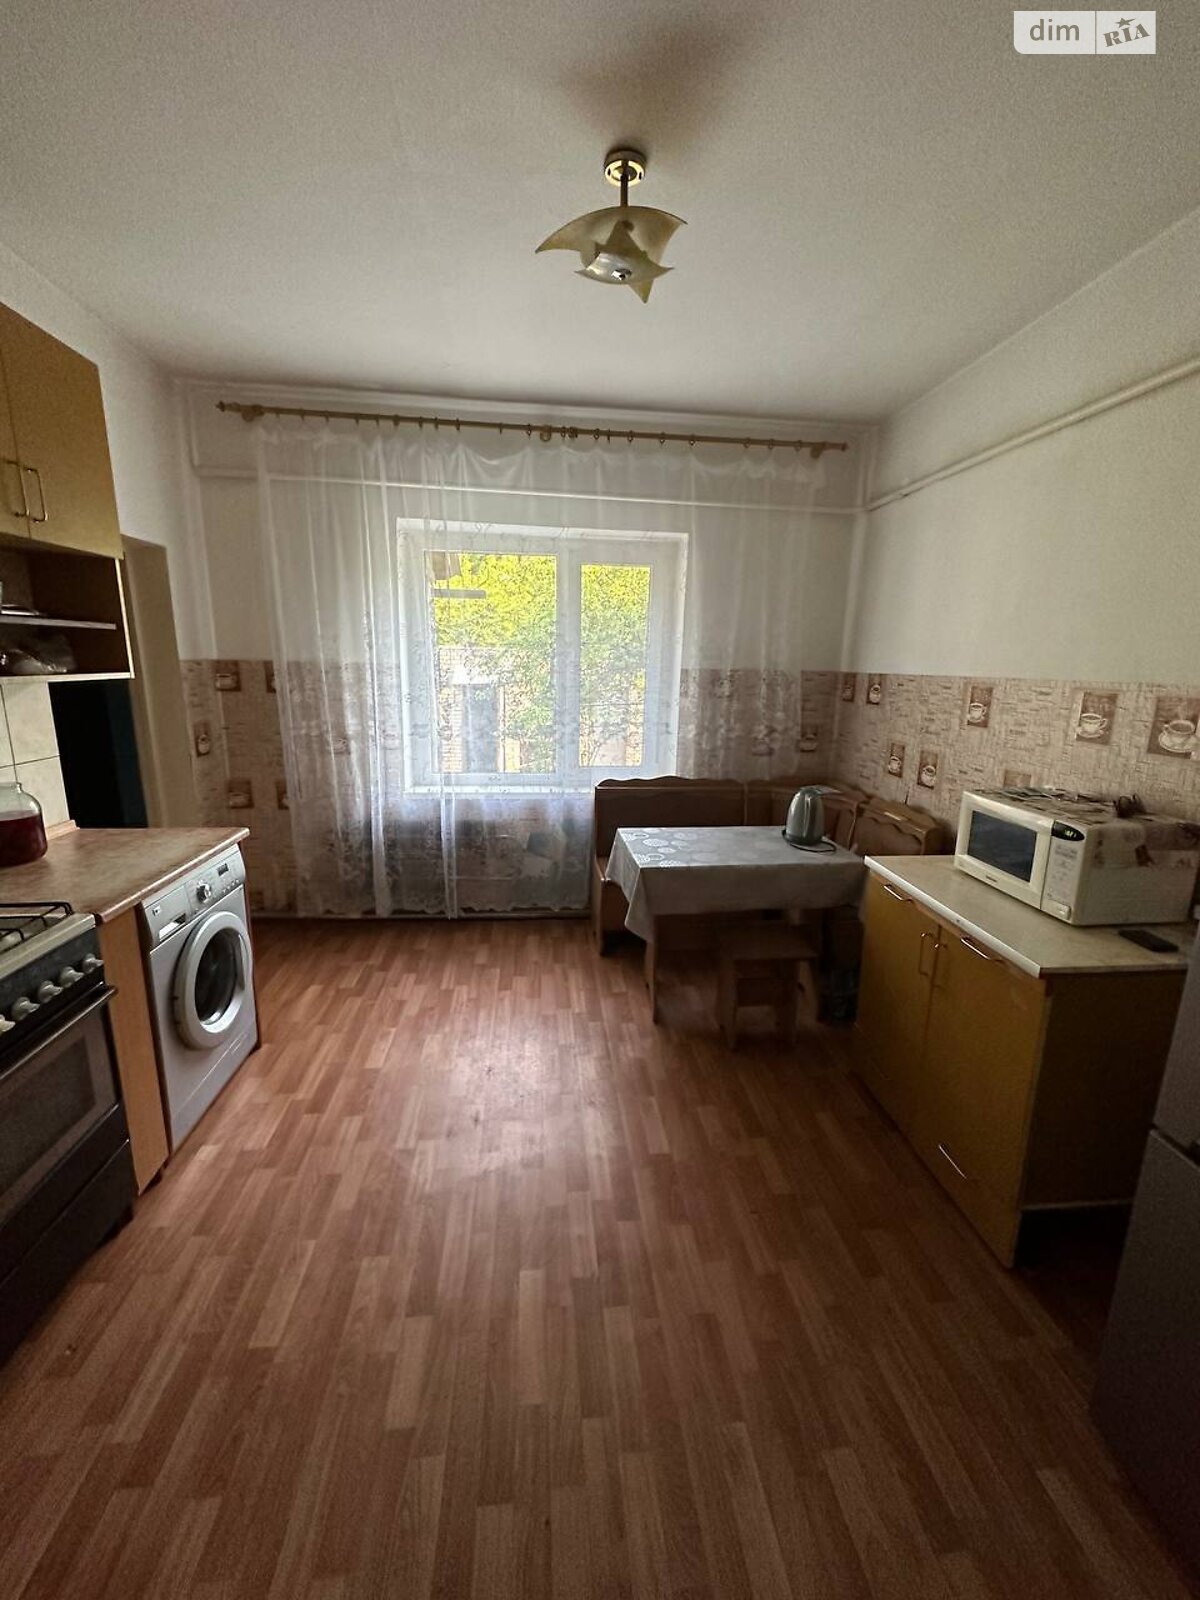 Продажа части дома в Сумах, улица Полесская, 2 комнаты фото 1